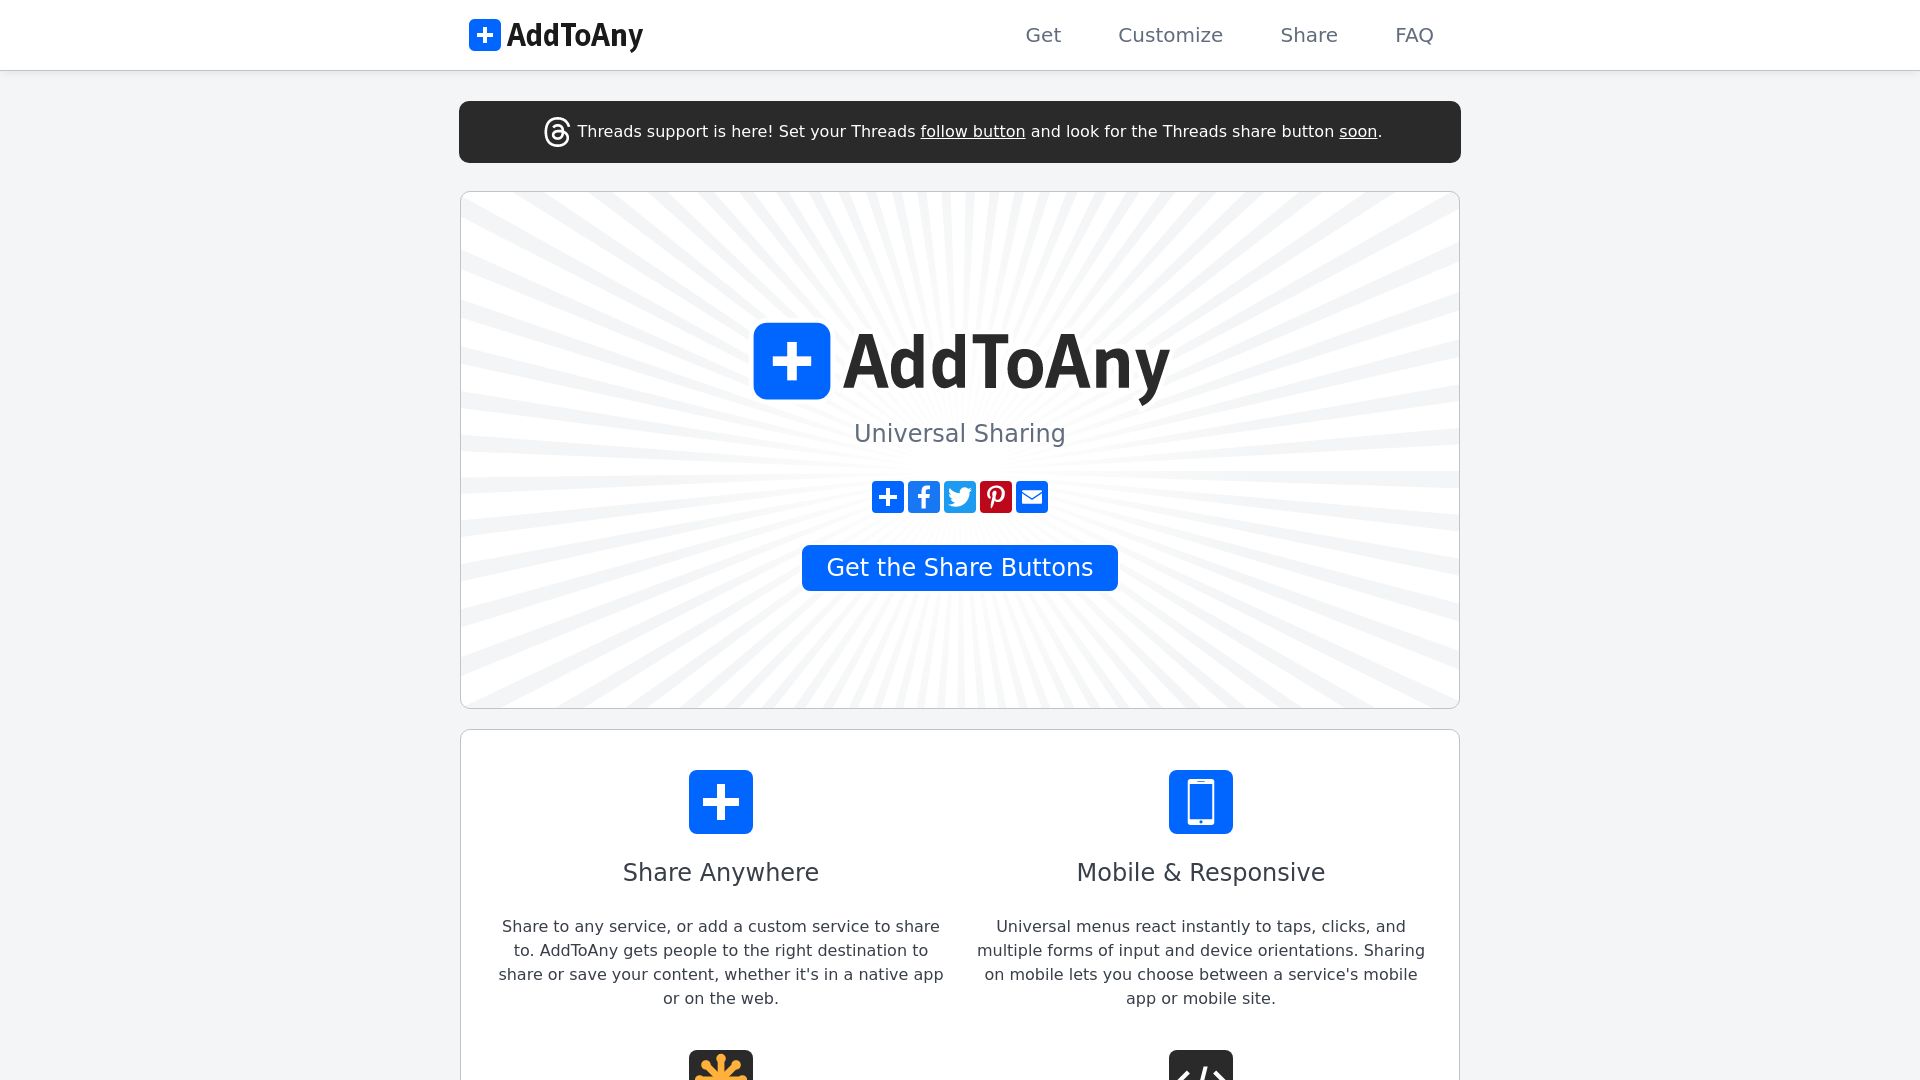 网站状态 addtoany.com 是  在线的